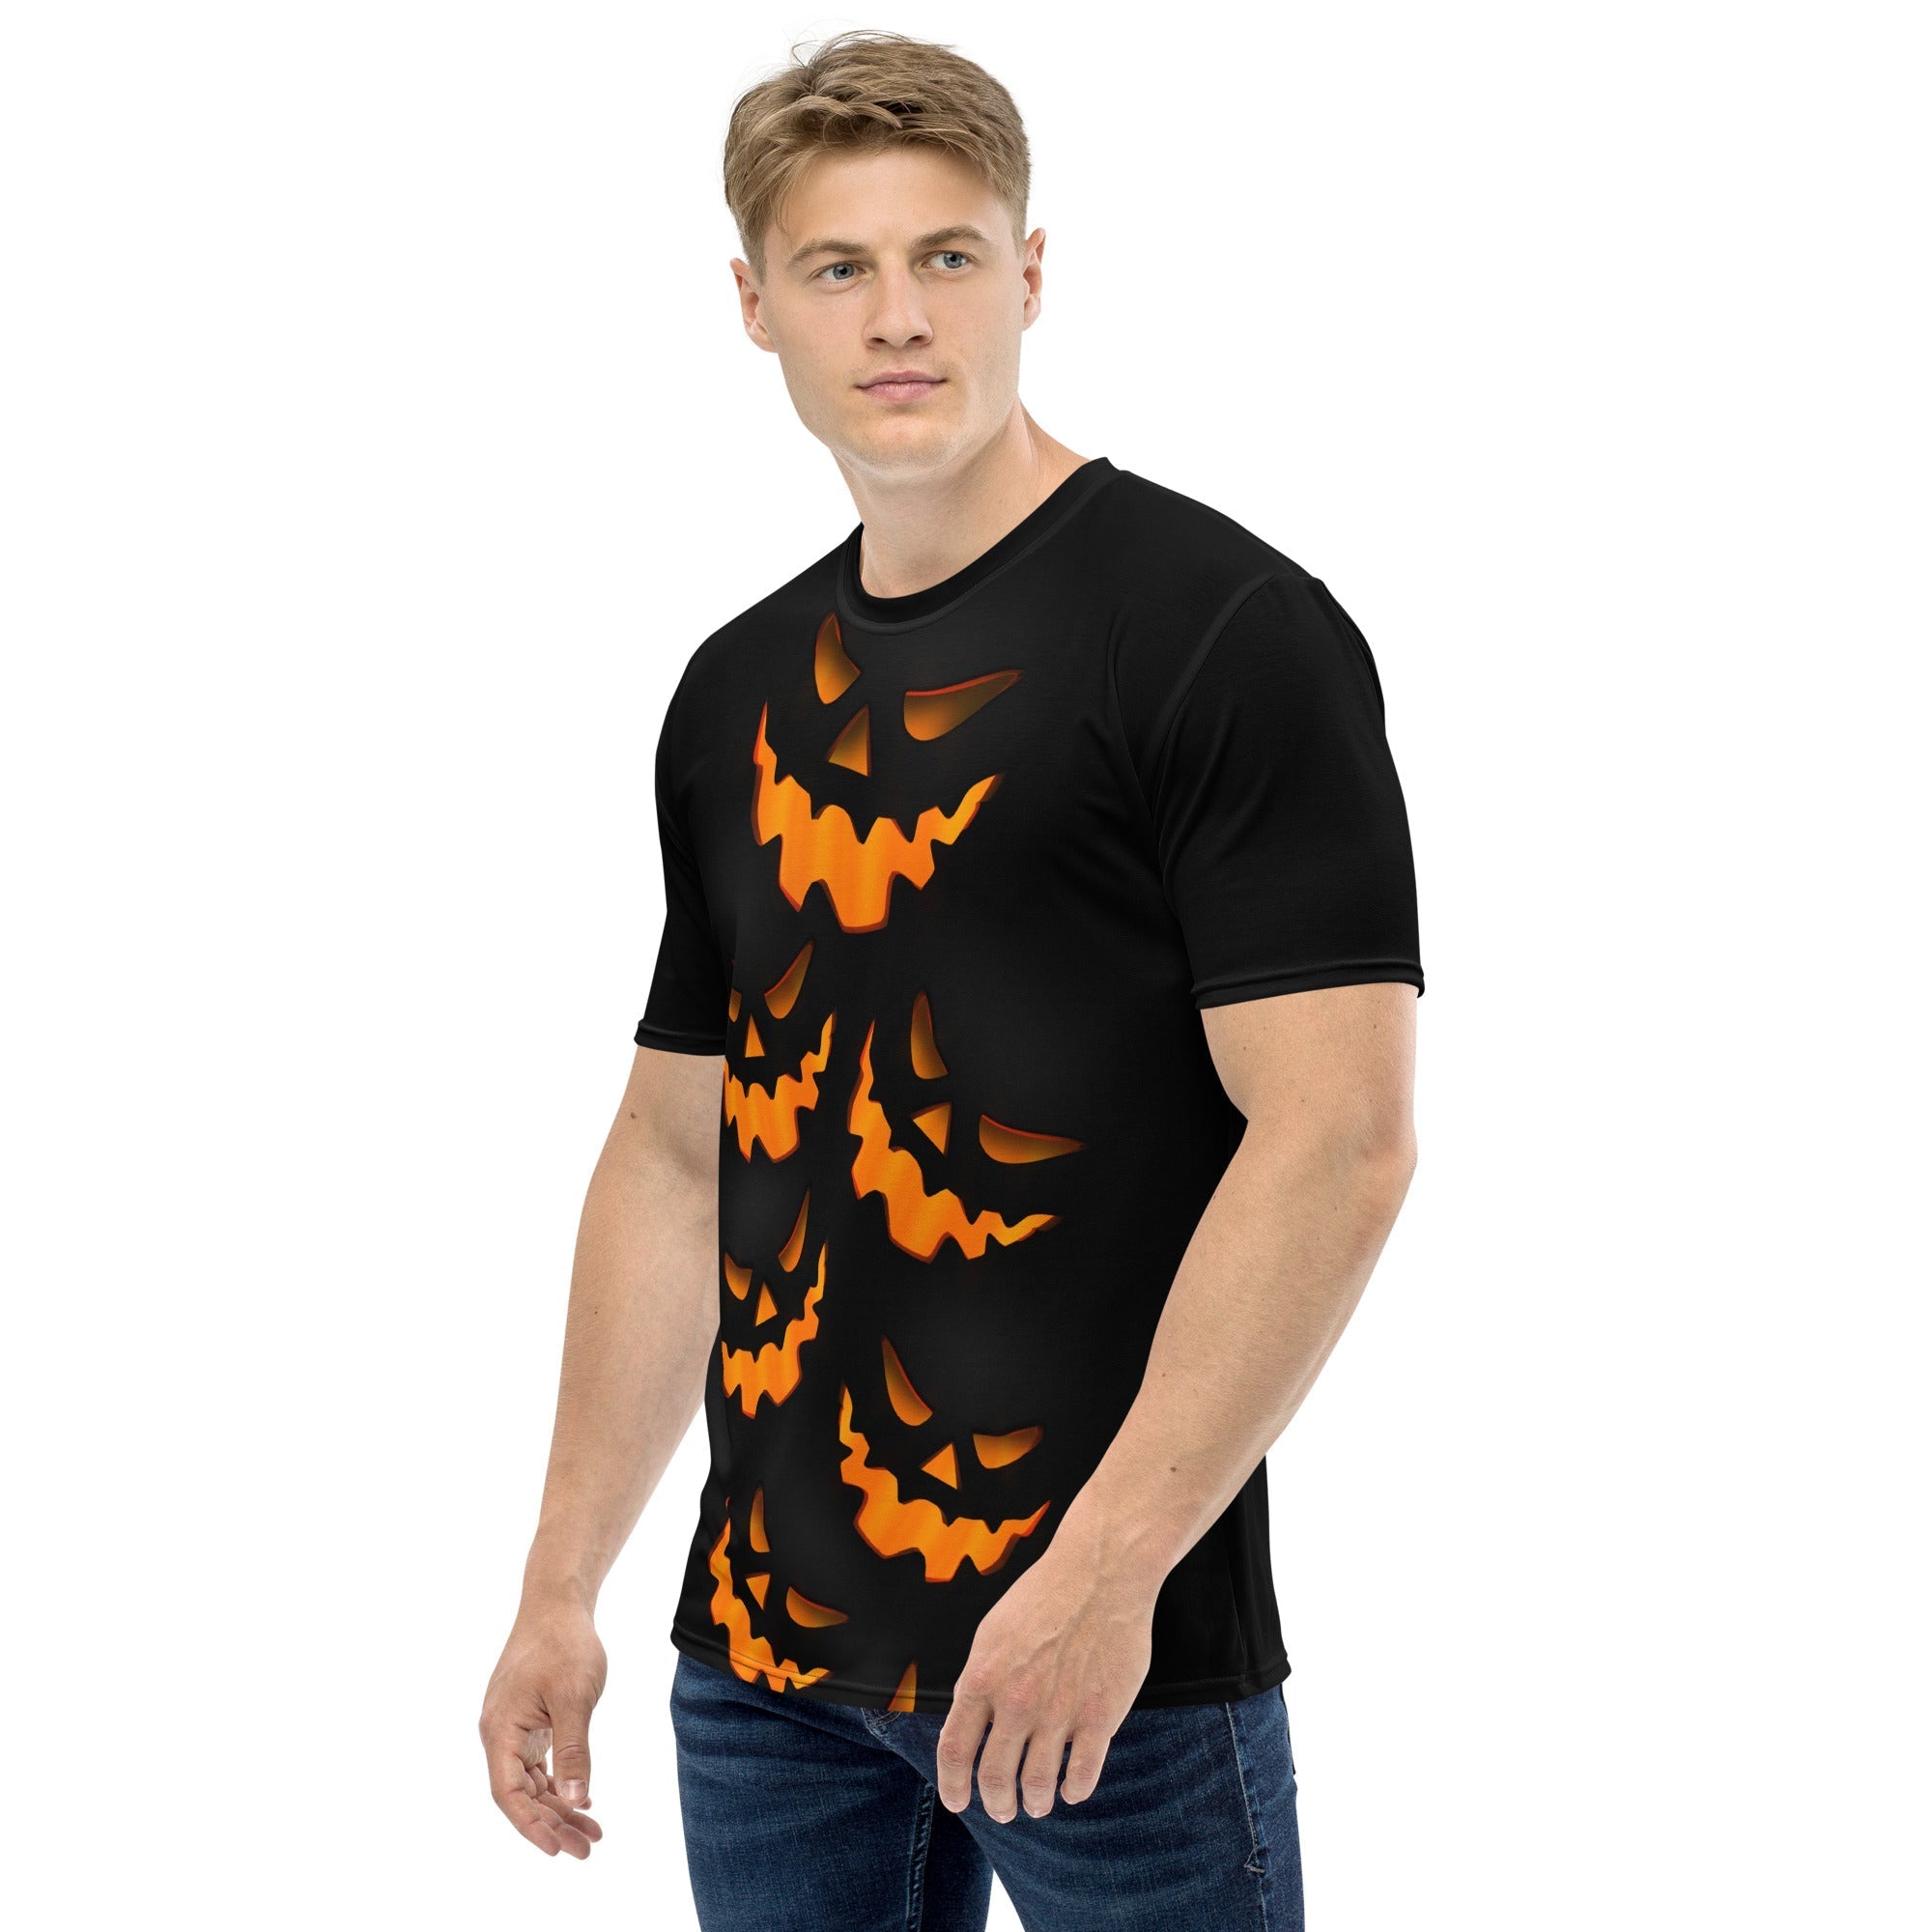 Spooky Pumpkin Halloween Men's T-shirt